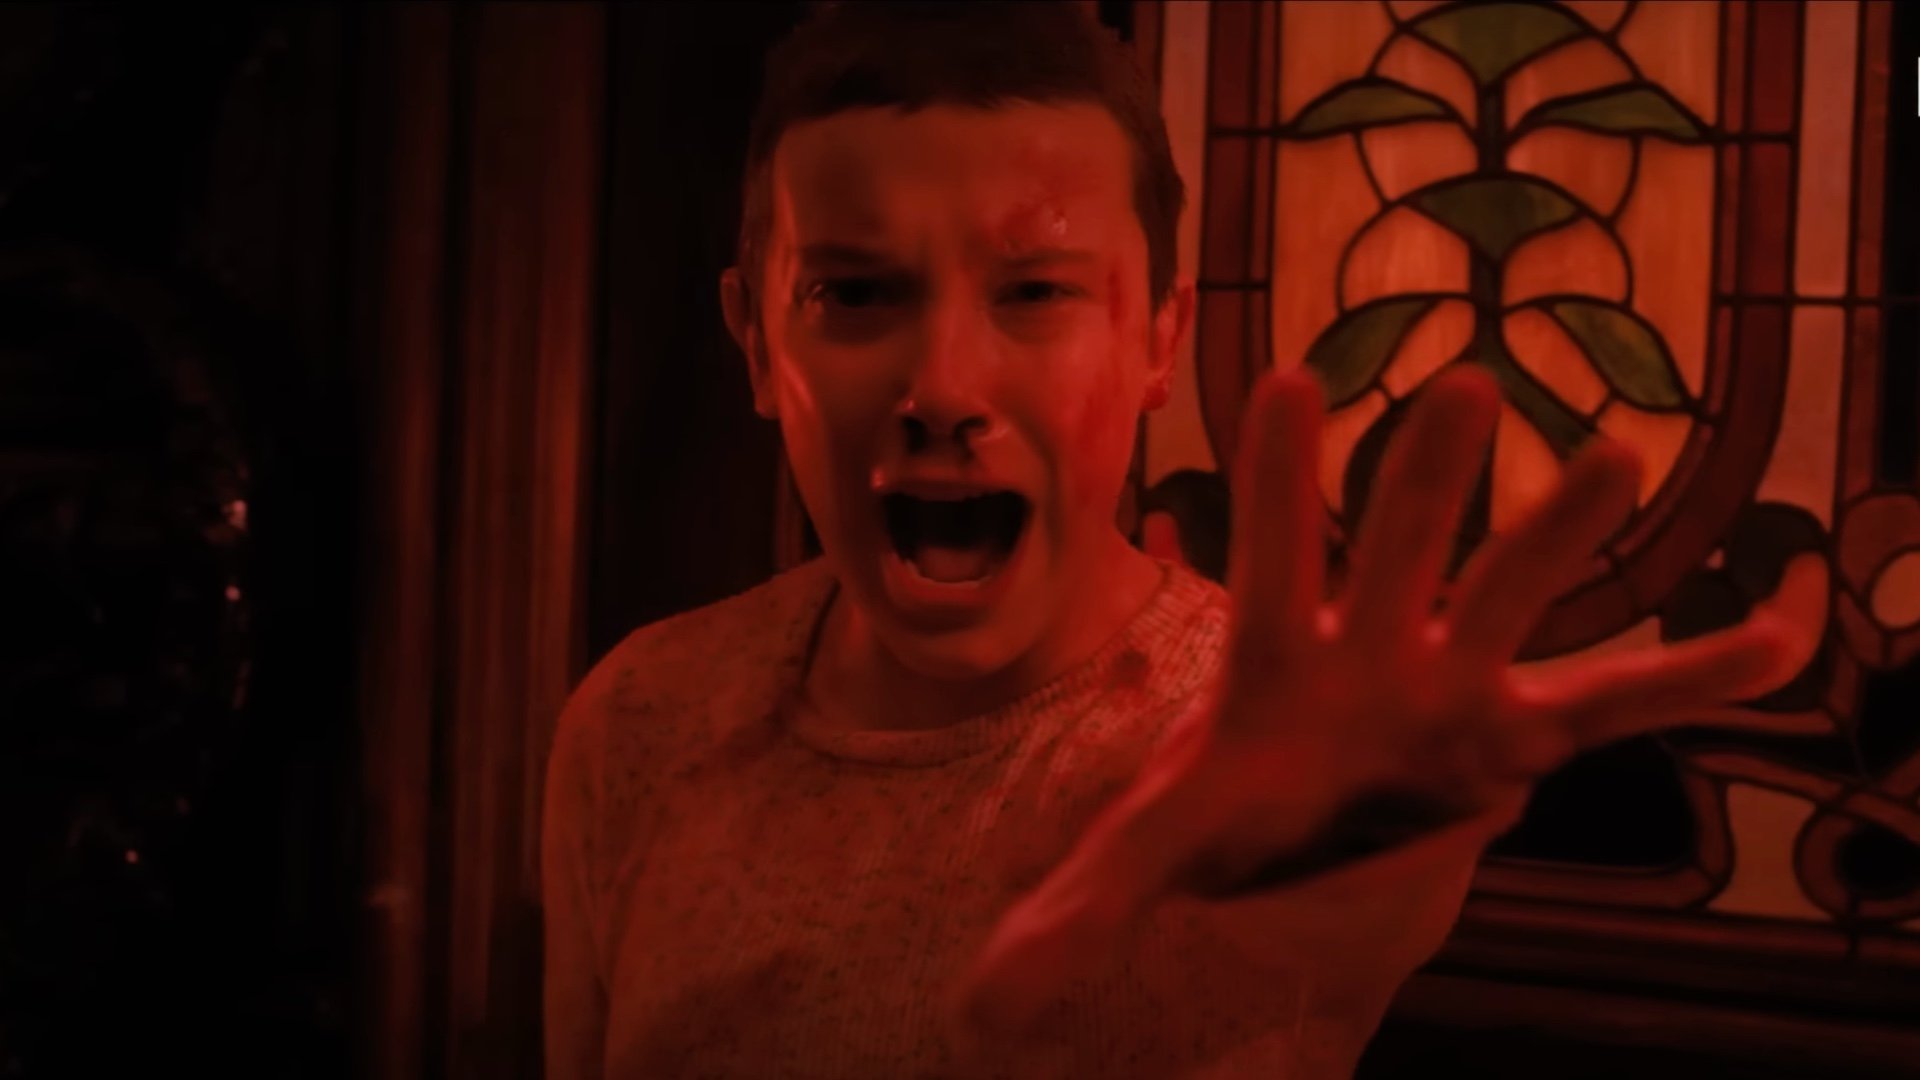 Stranger Things 4' Trailer Volume 2: Netflix releases the teaser